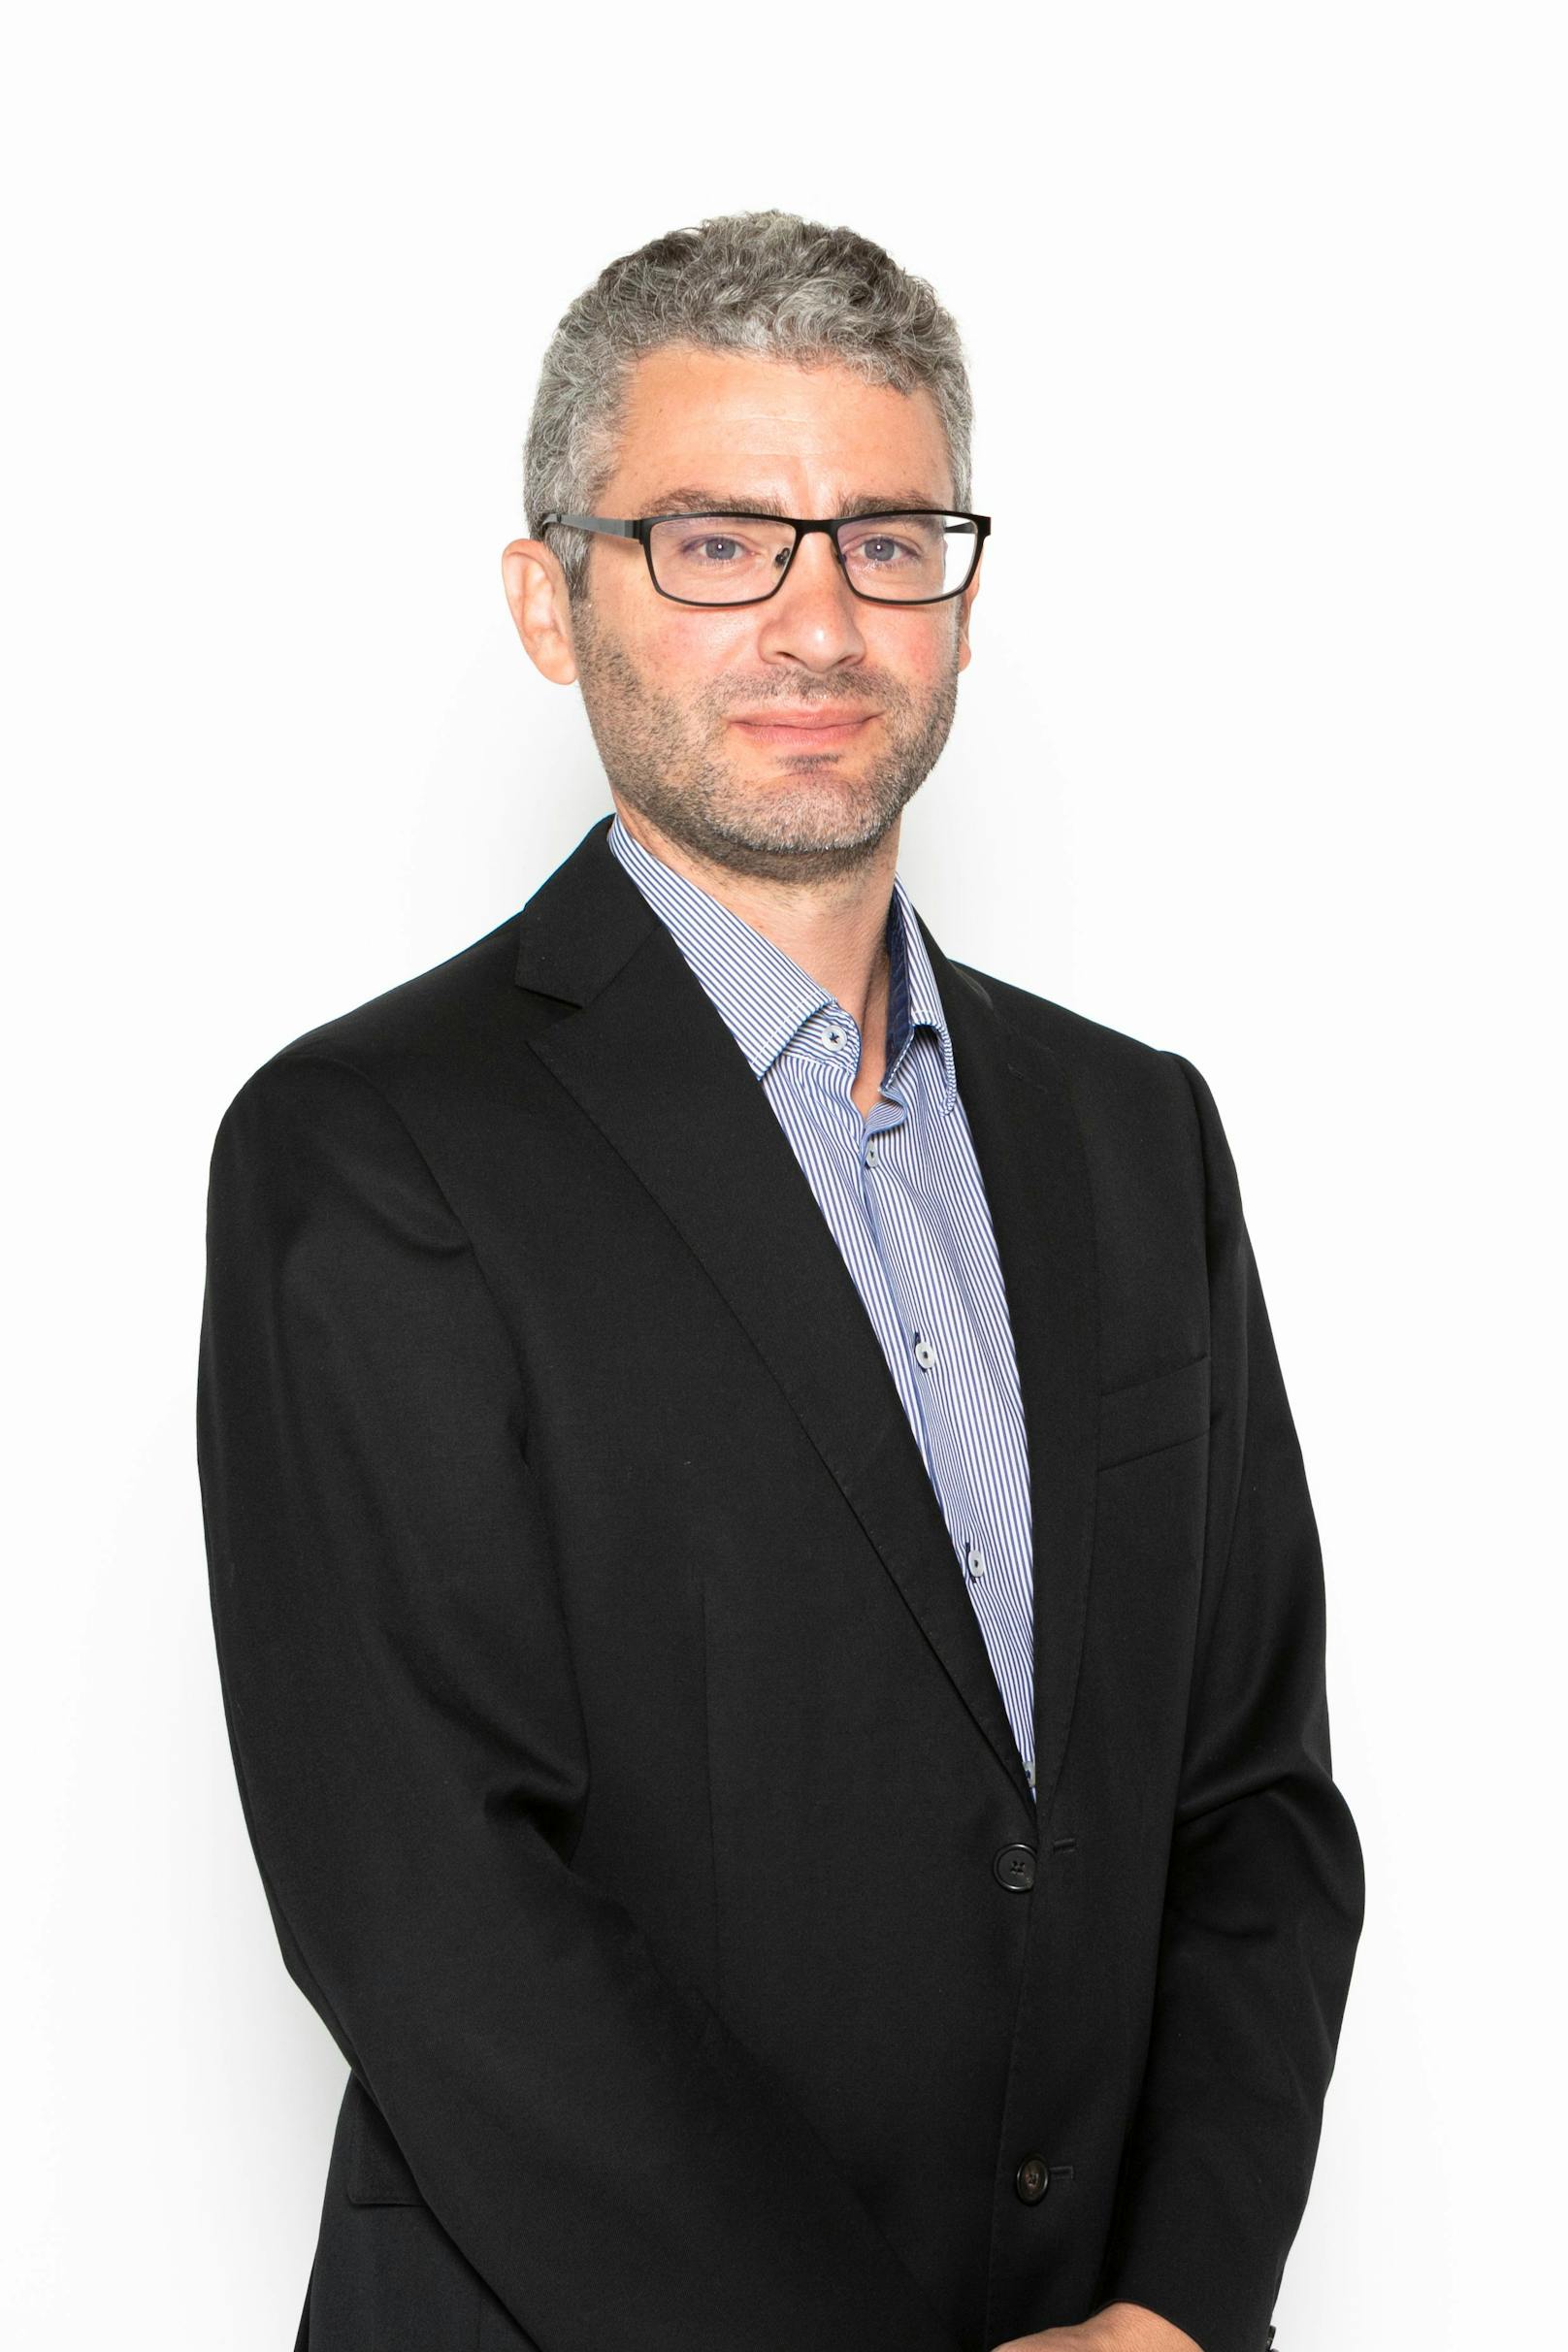 Mario Hueber ist Kino-Sprecher bei der Wirtschaftskammer in NÖ.